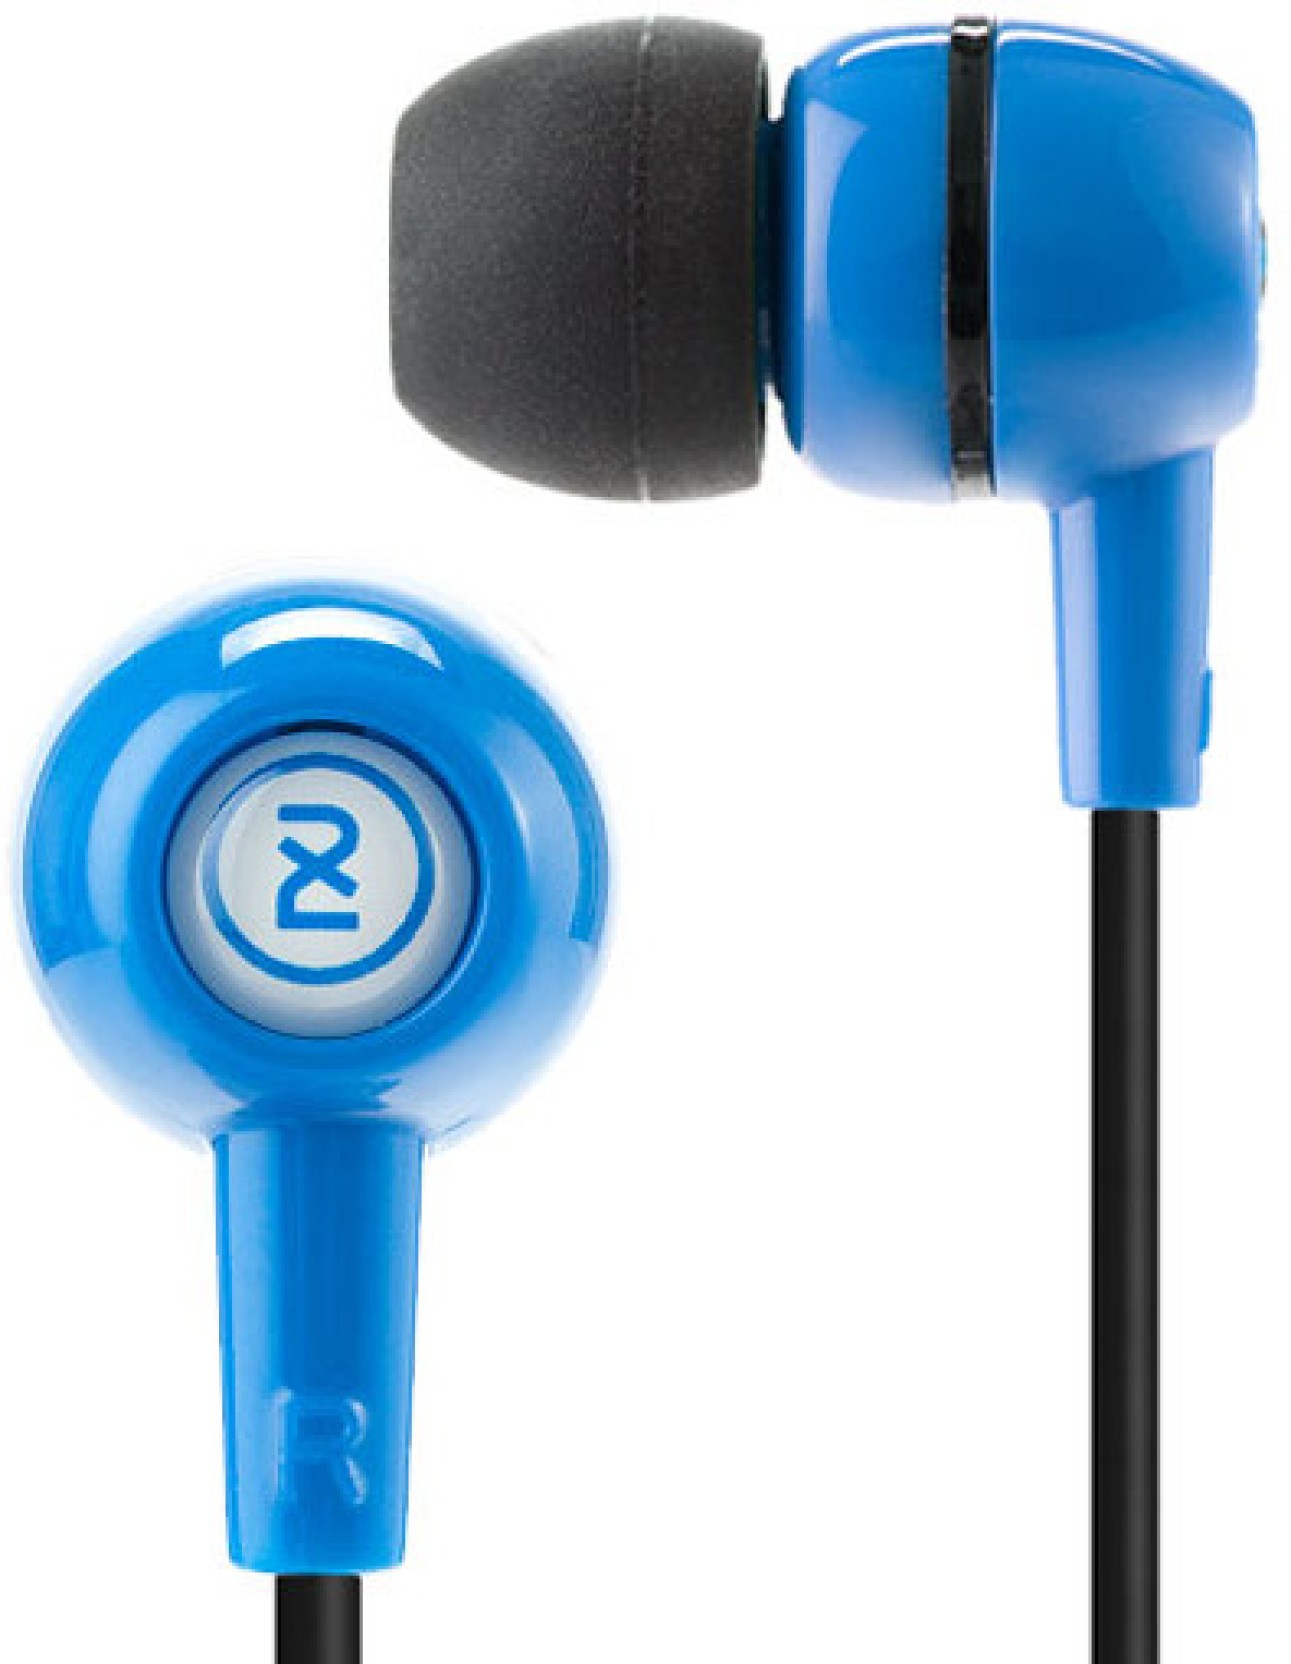 Skullcandy 2XL Spoke Wired Headphones Price in India - Buy Skullcandy ...